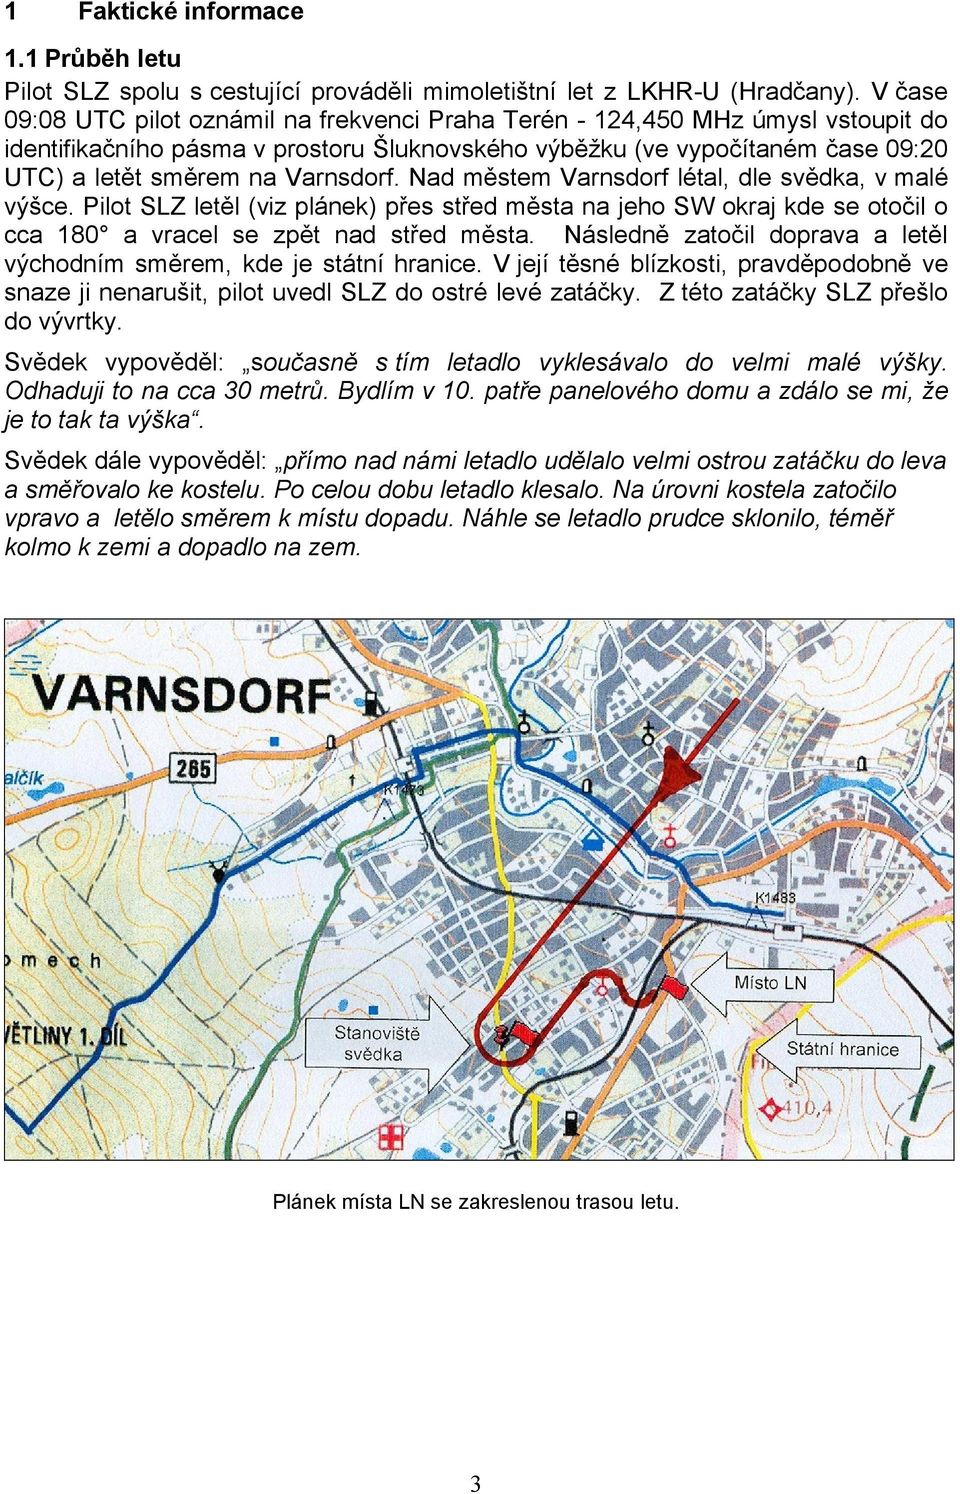 Varnsdorf. Nad městem Varnsdorf létal, dle svědka, v malé výšce. Pilot SLZ letěl (viz plánek) přes střed města na jeho SW okraj kde se otočil o cca 180 a vracel se zpět nad střed města.